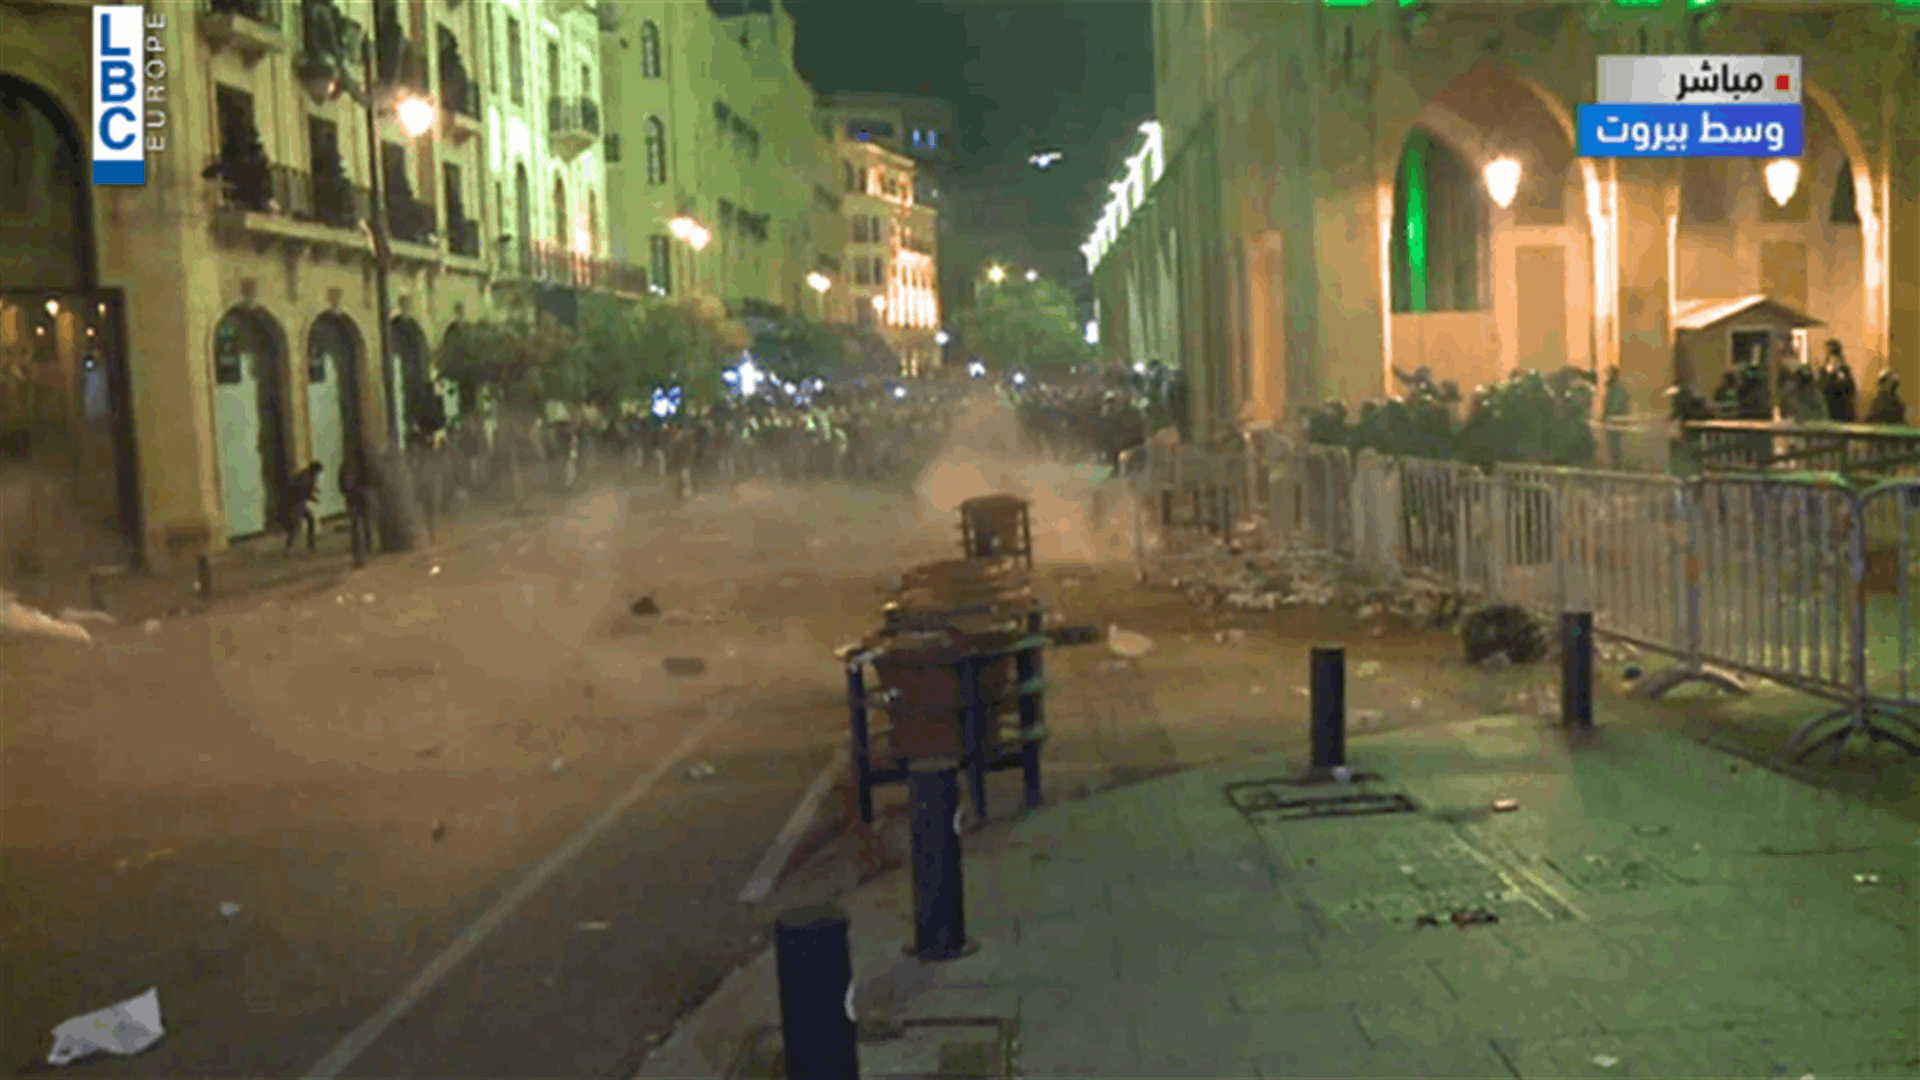 عودة التوتر الى وسط بيروت... وقوى الامن تطلق القنابل المسيلة للدموع لتفريق المتظاهرين (فيديو)